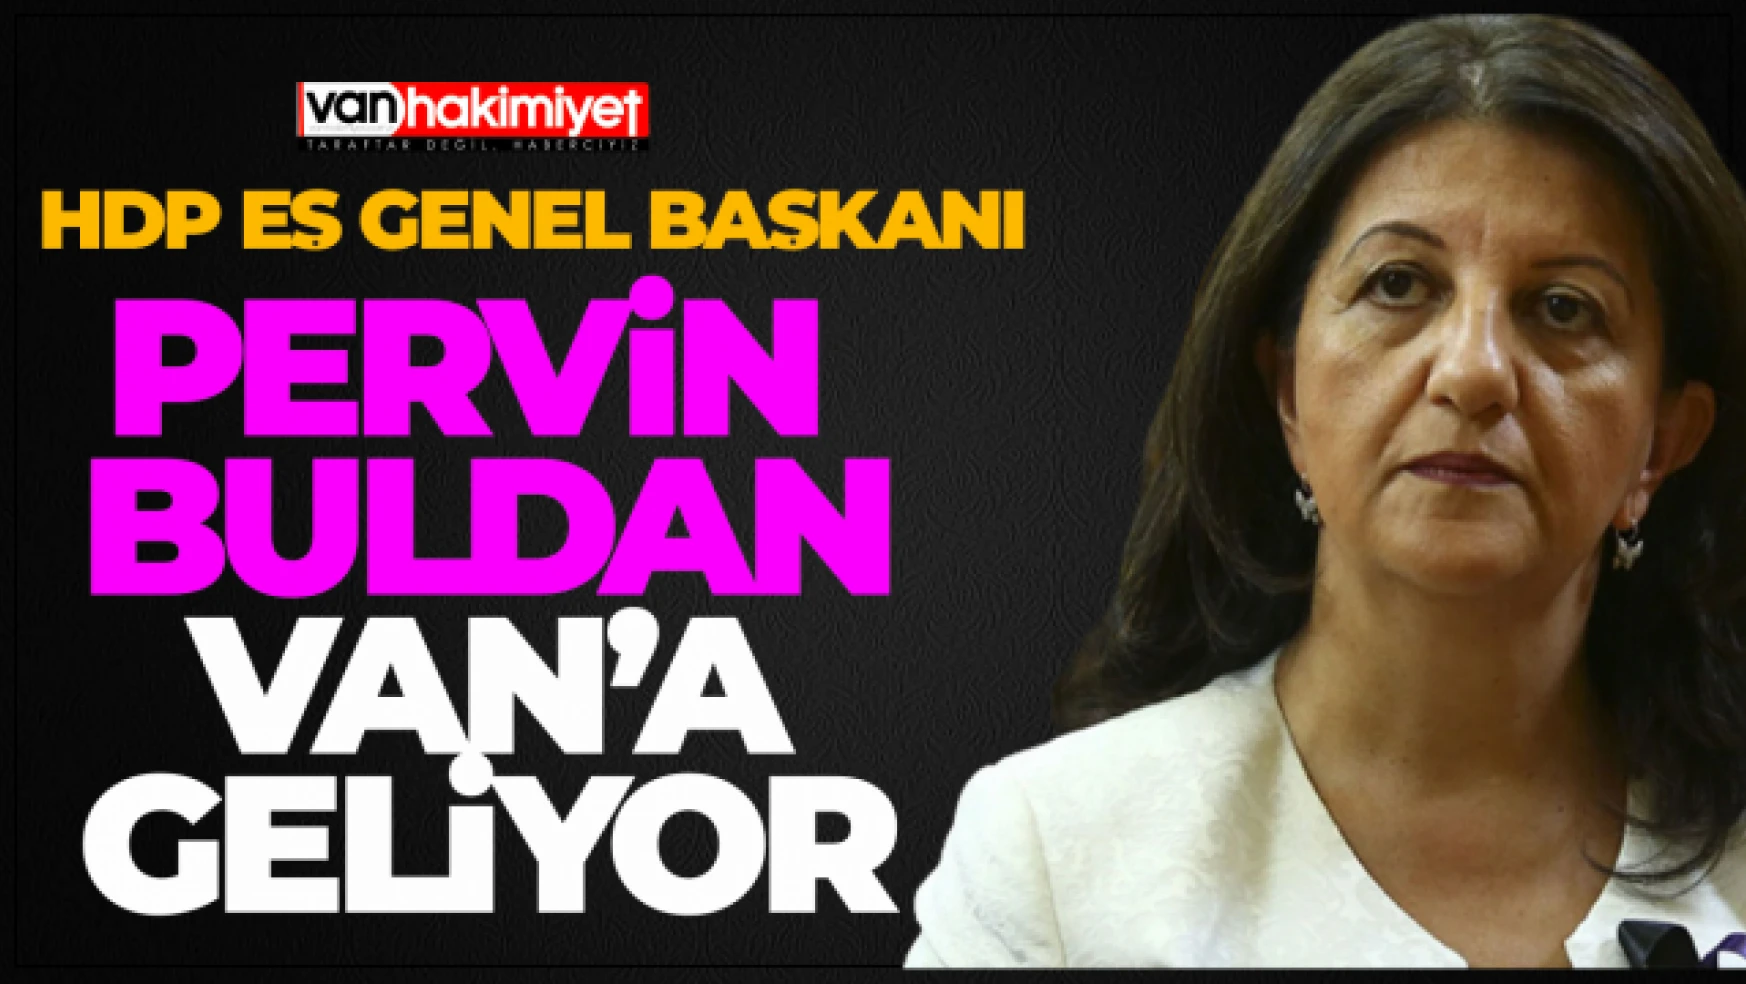 HDP Eş Genel Başkanı Buldan Van'a Geliyor